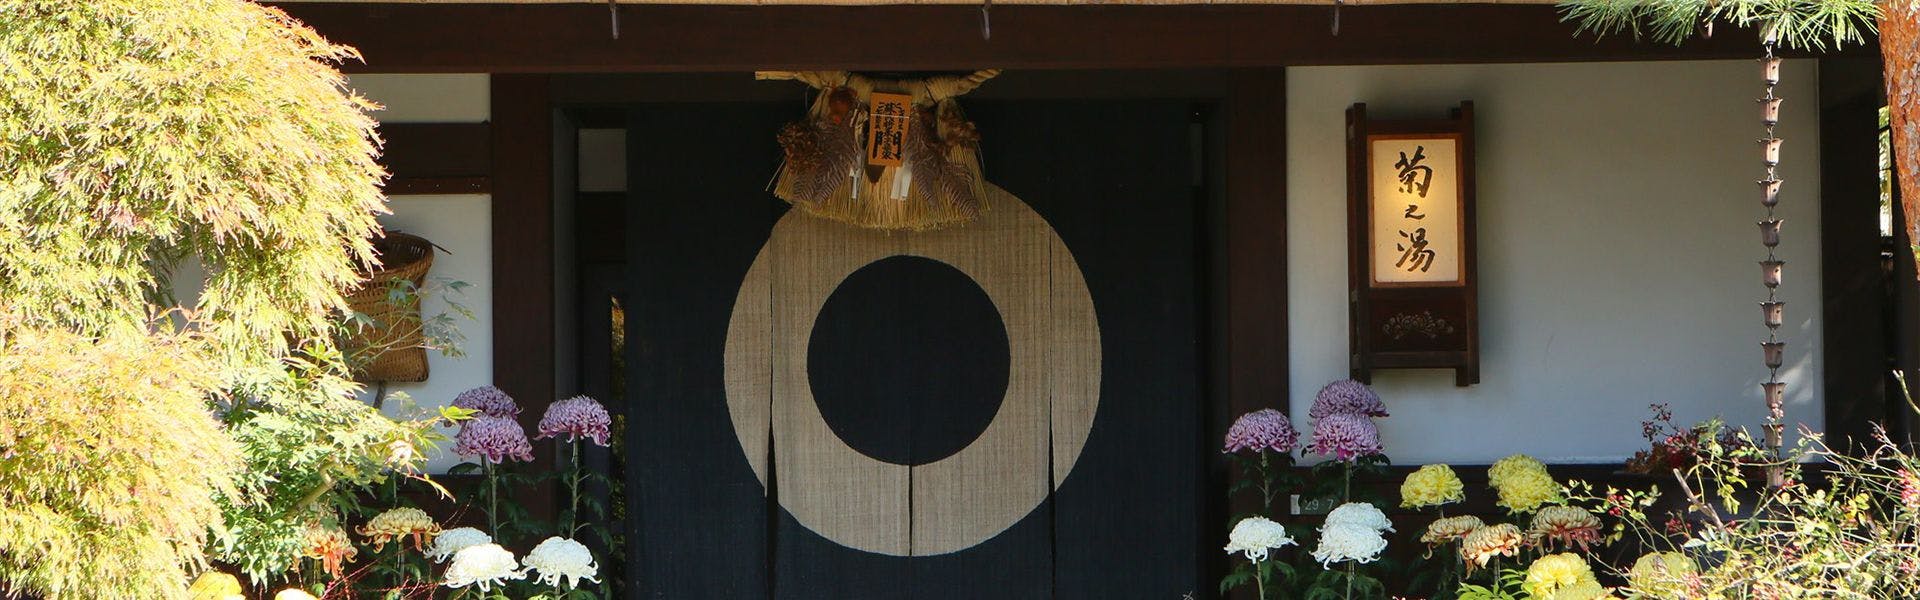 記念日におすすめのホテル・浅間温泉 菊之湯の写真1